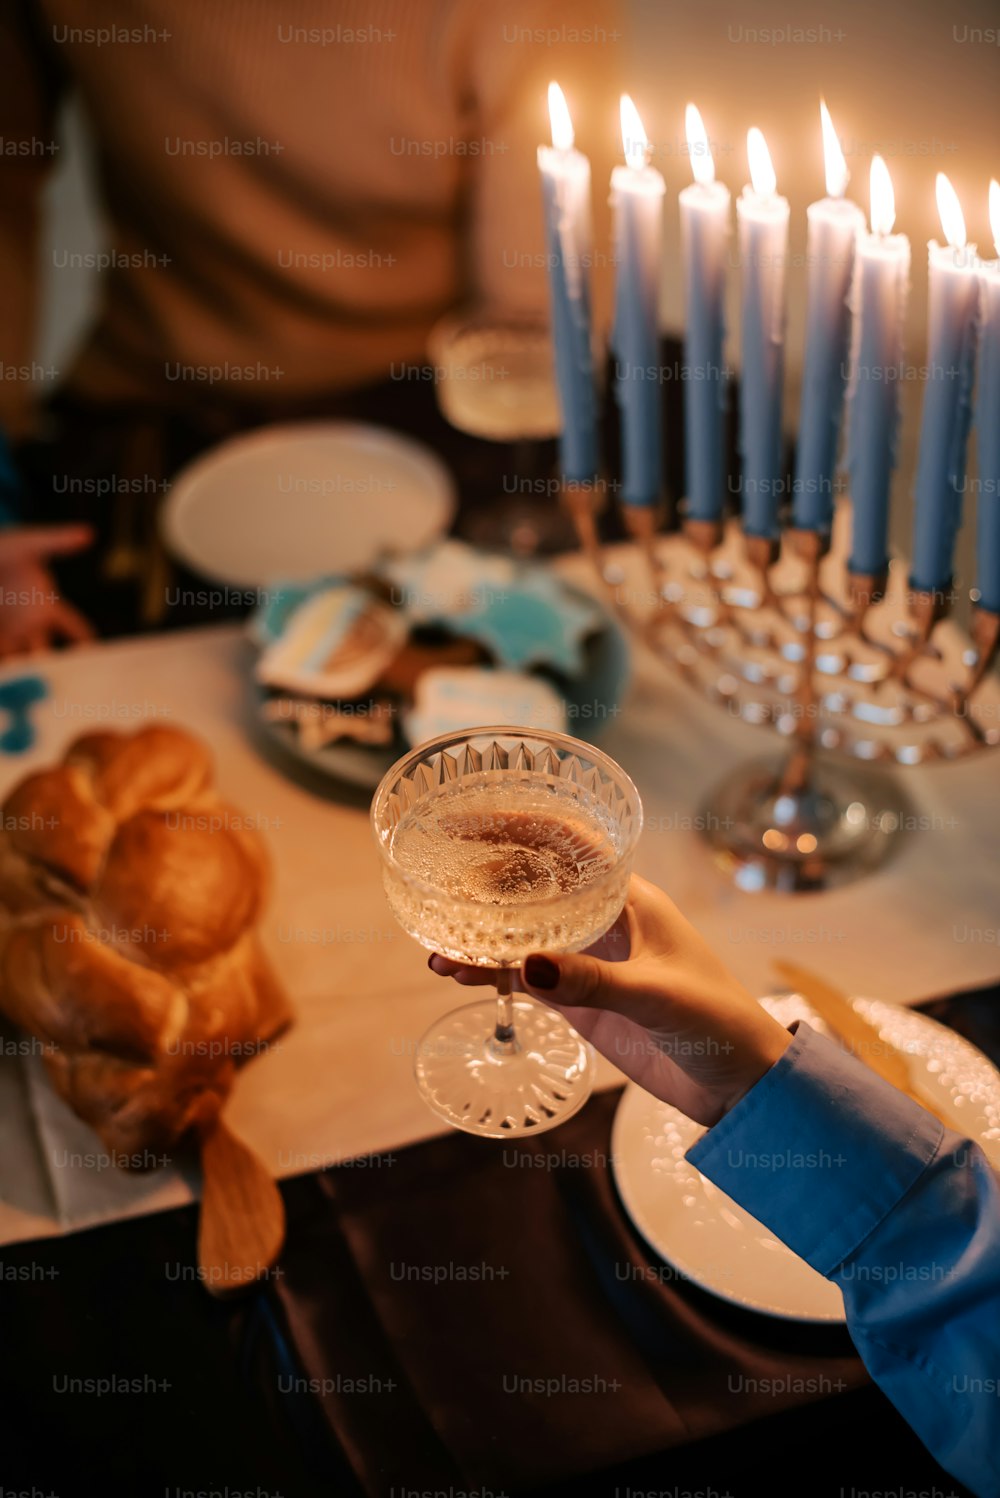 촛불이 있는 테이블 앞에서 와인잔을 들고 있는 사람